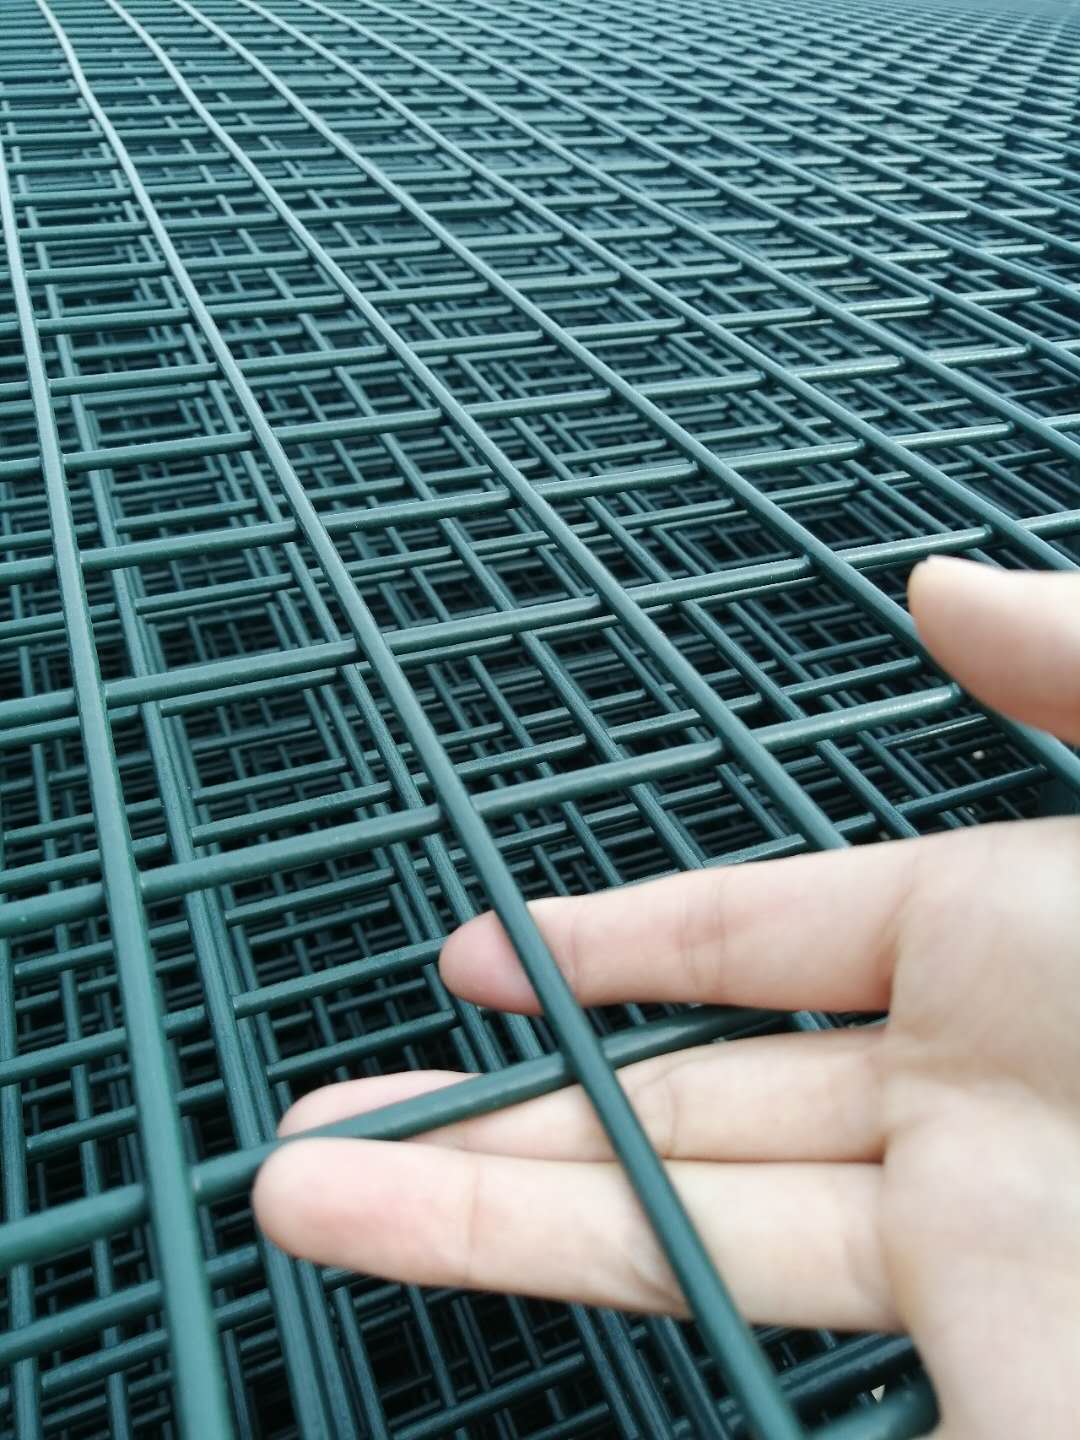 天津垃圾场围栏网-填埋场围栏网